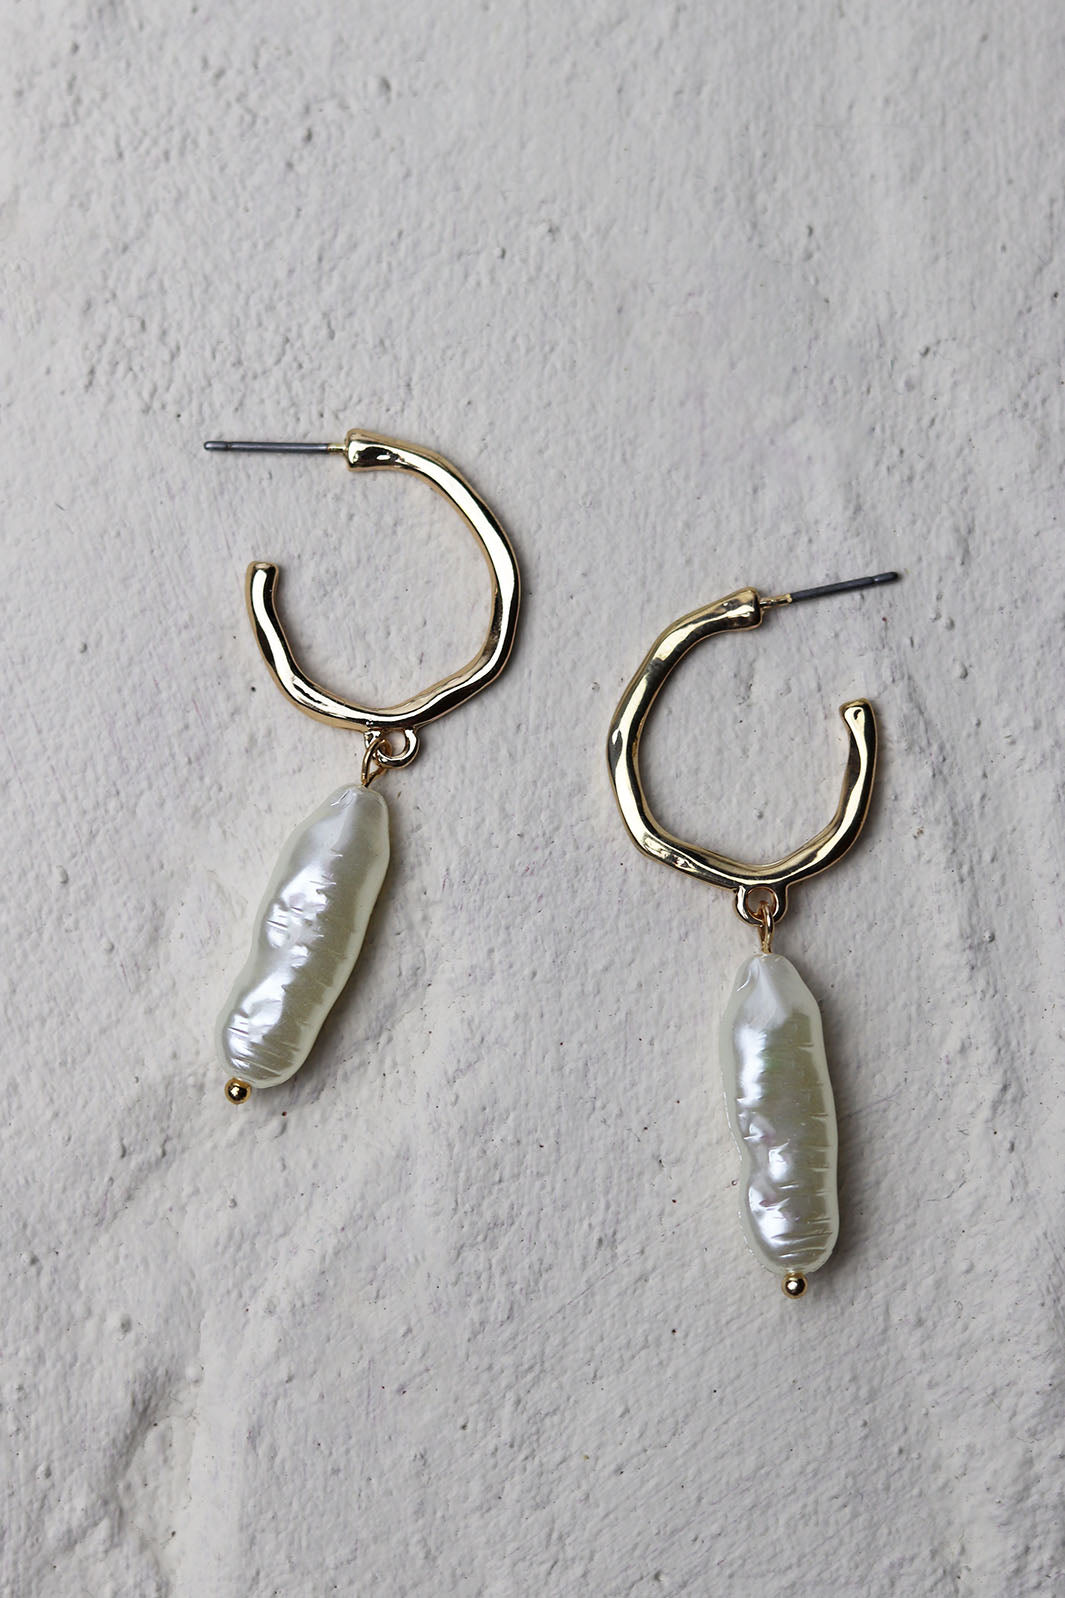 Gold Hoop Long Pearl Earrings